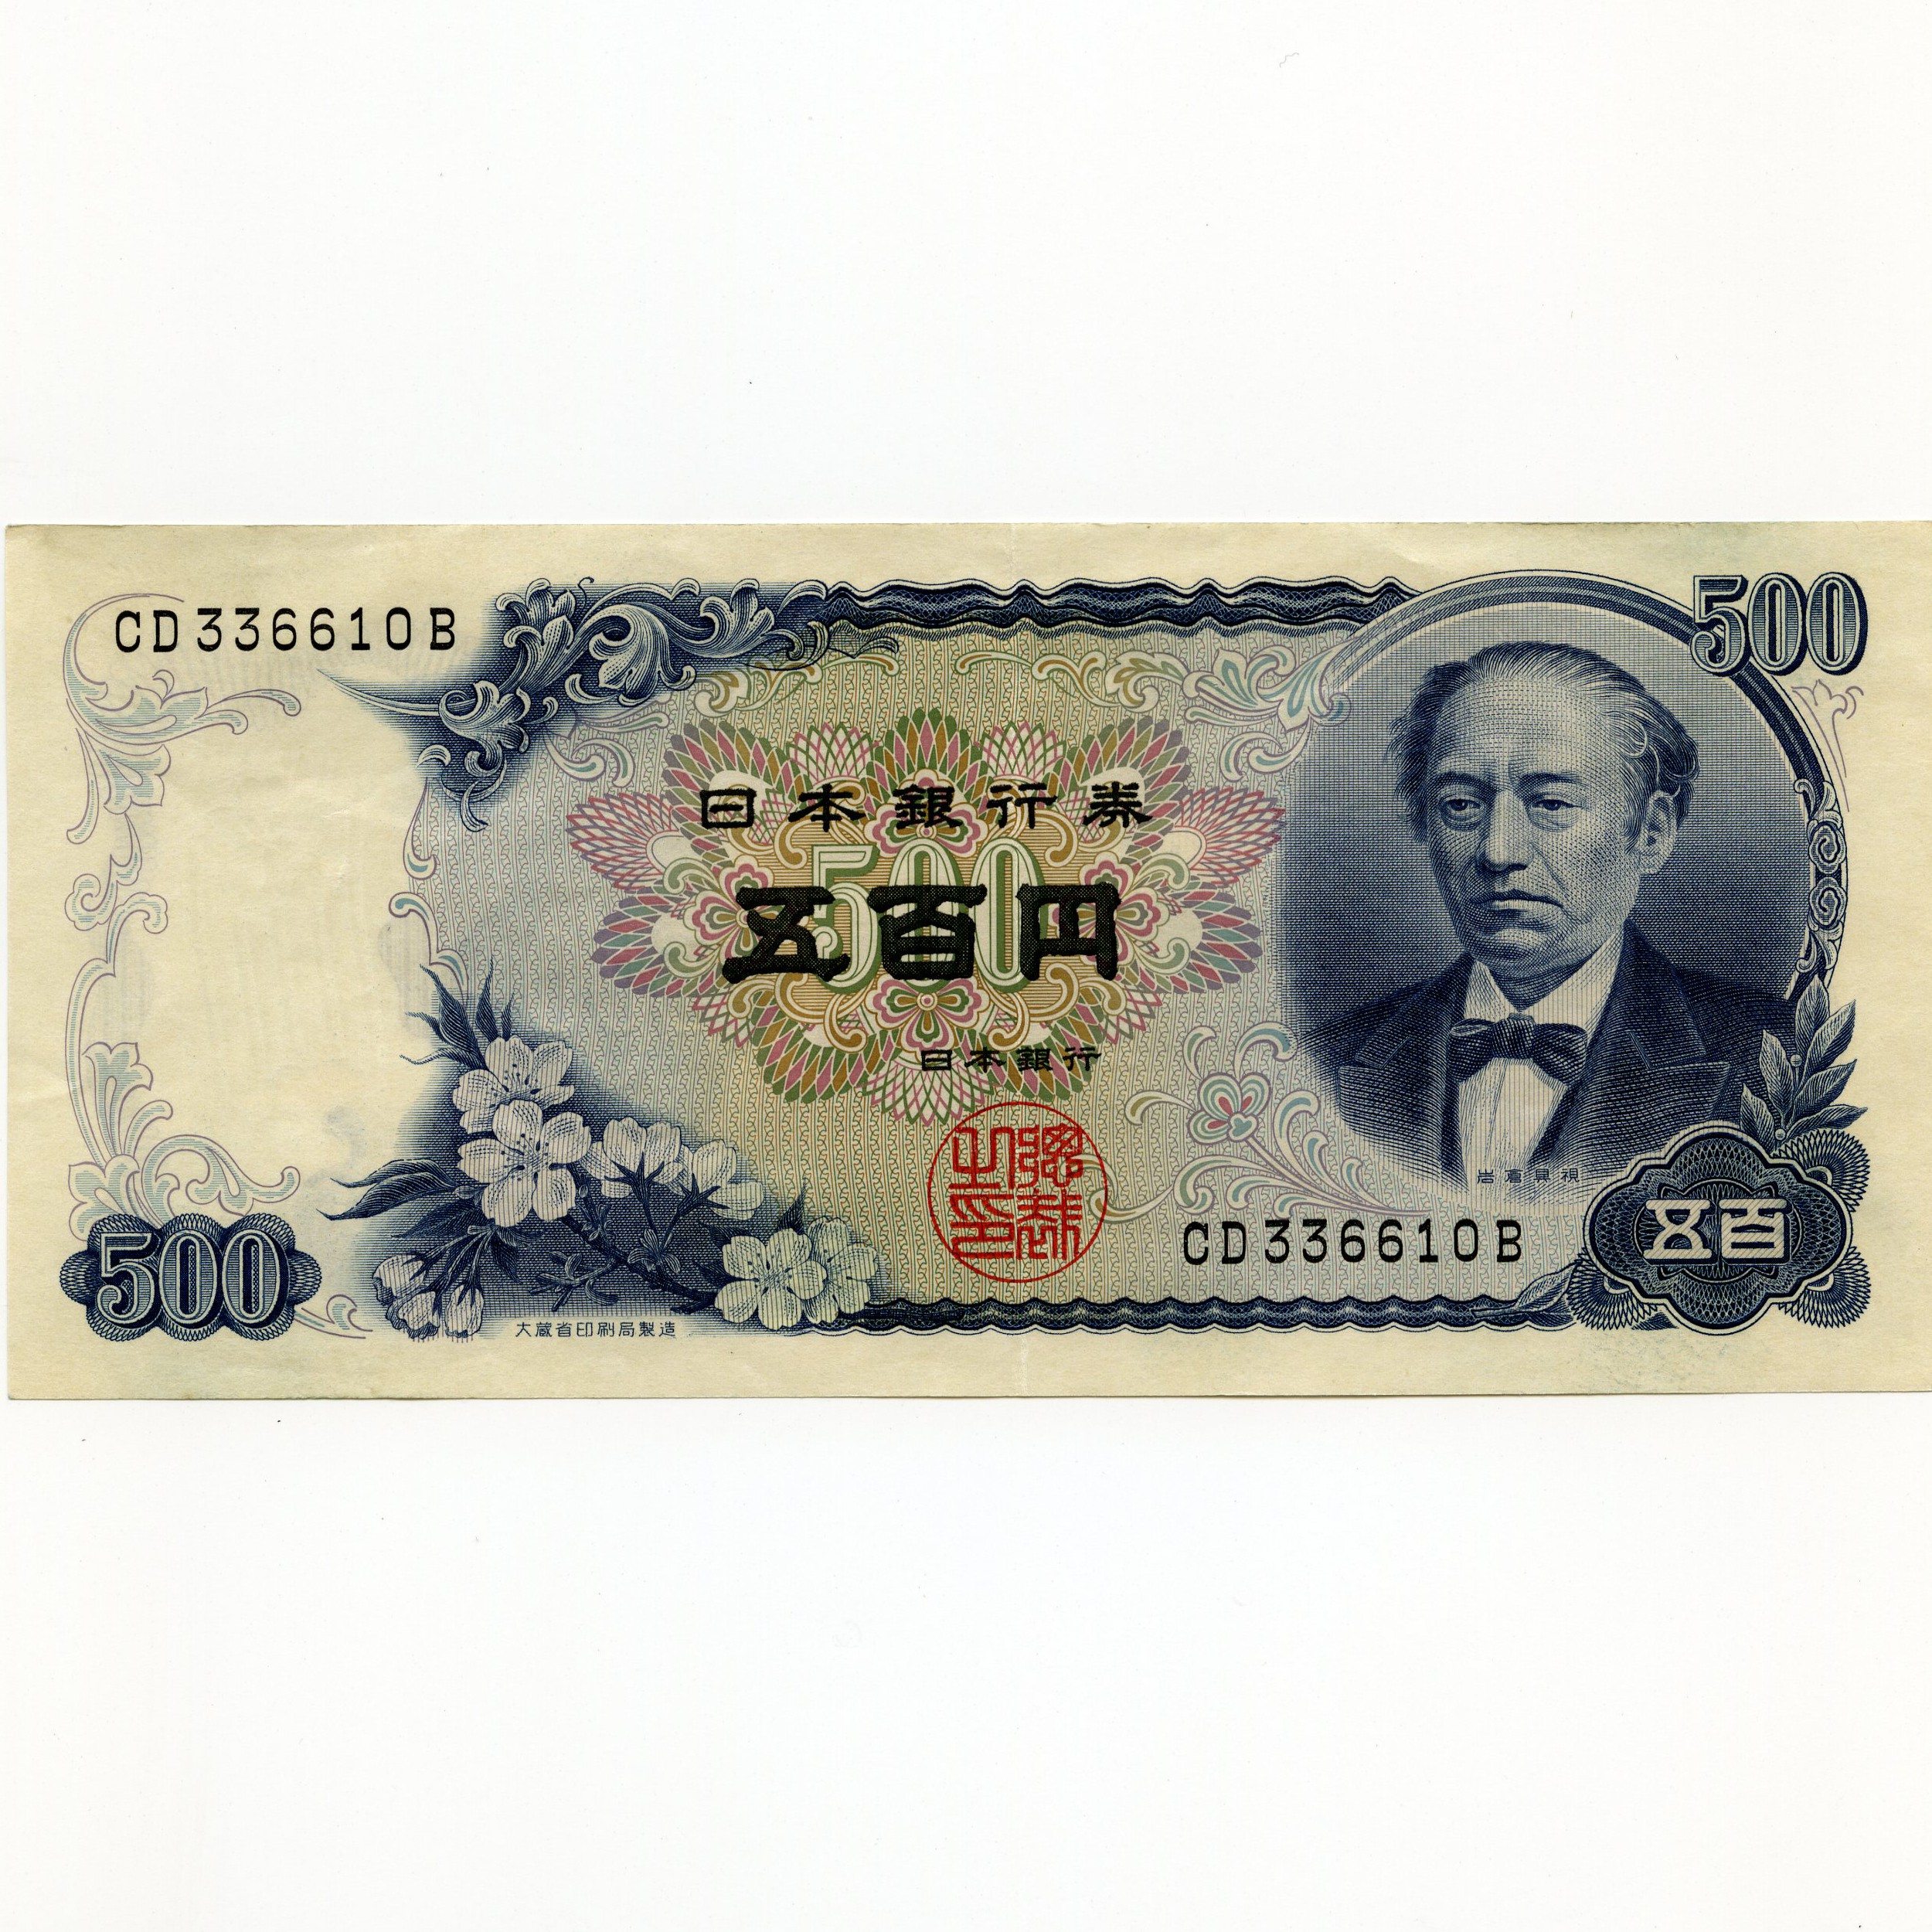 Japon - 500 Yen - CD336610B avers